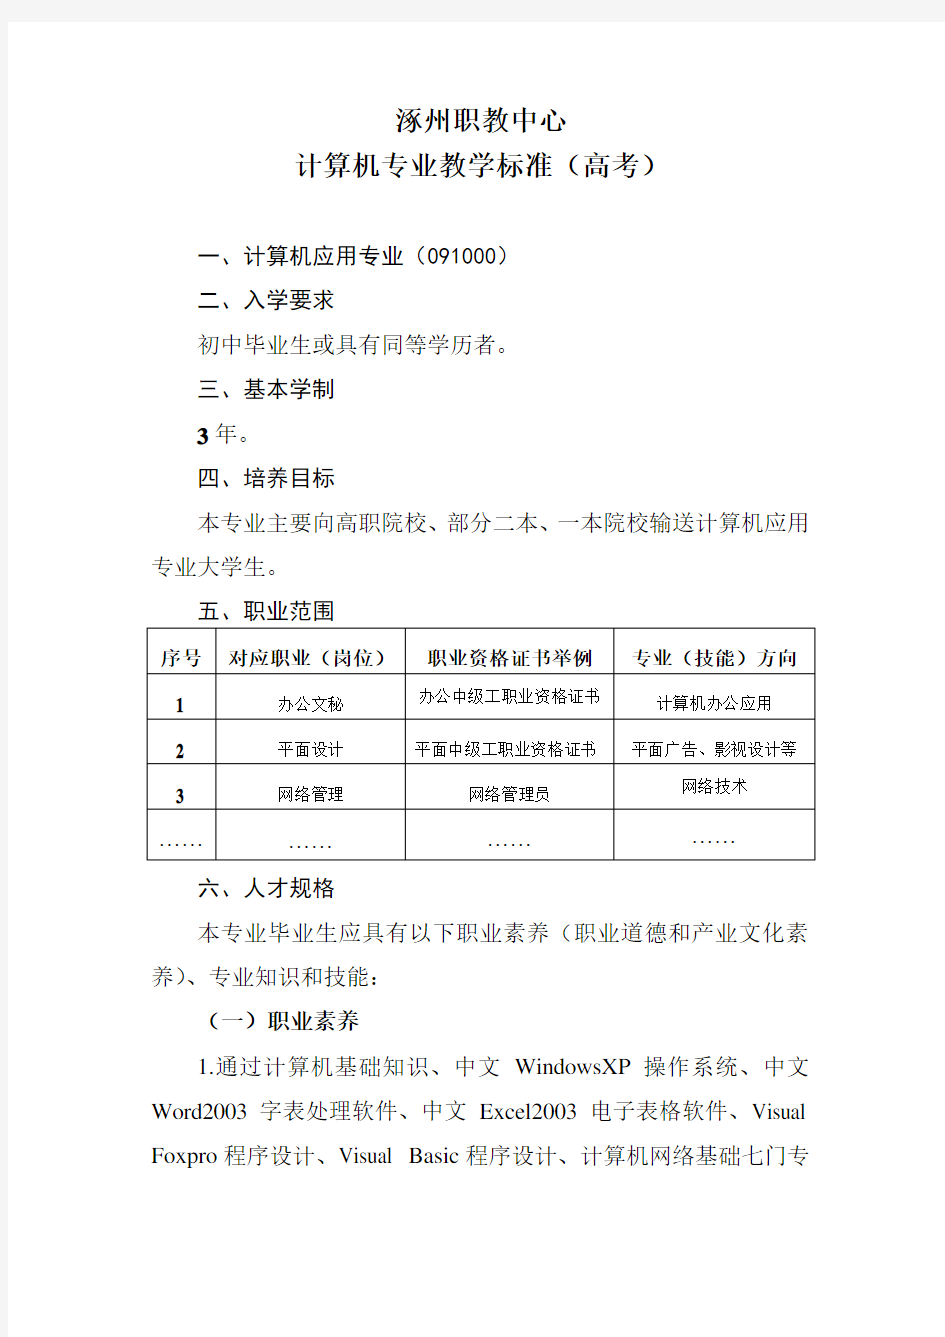 涿州职教中心计算机专业高考班人才培养方案